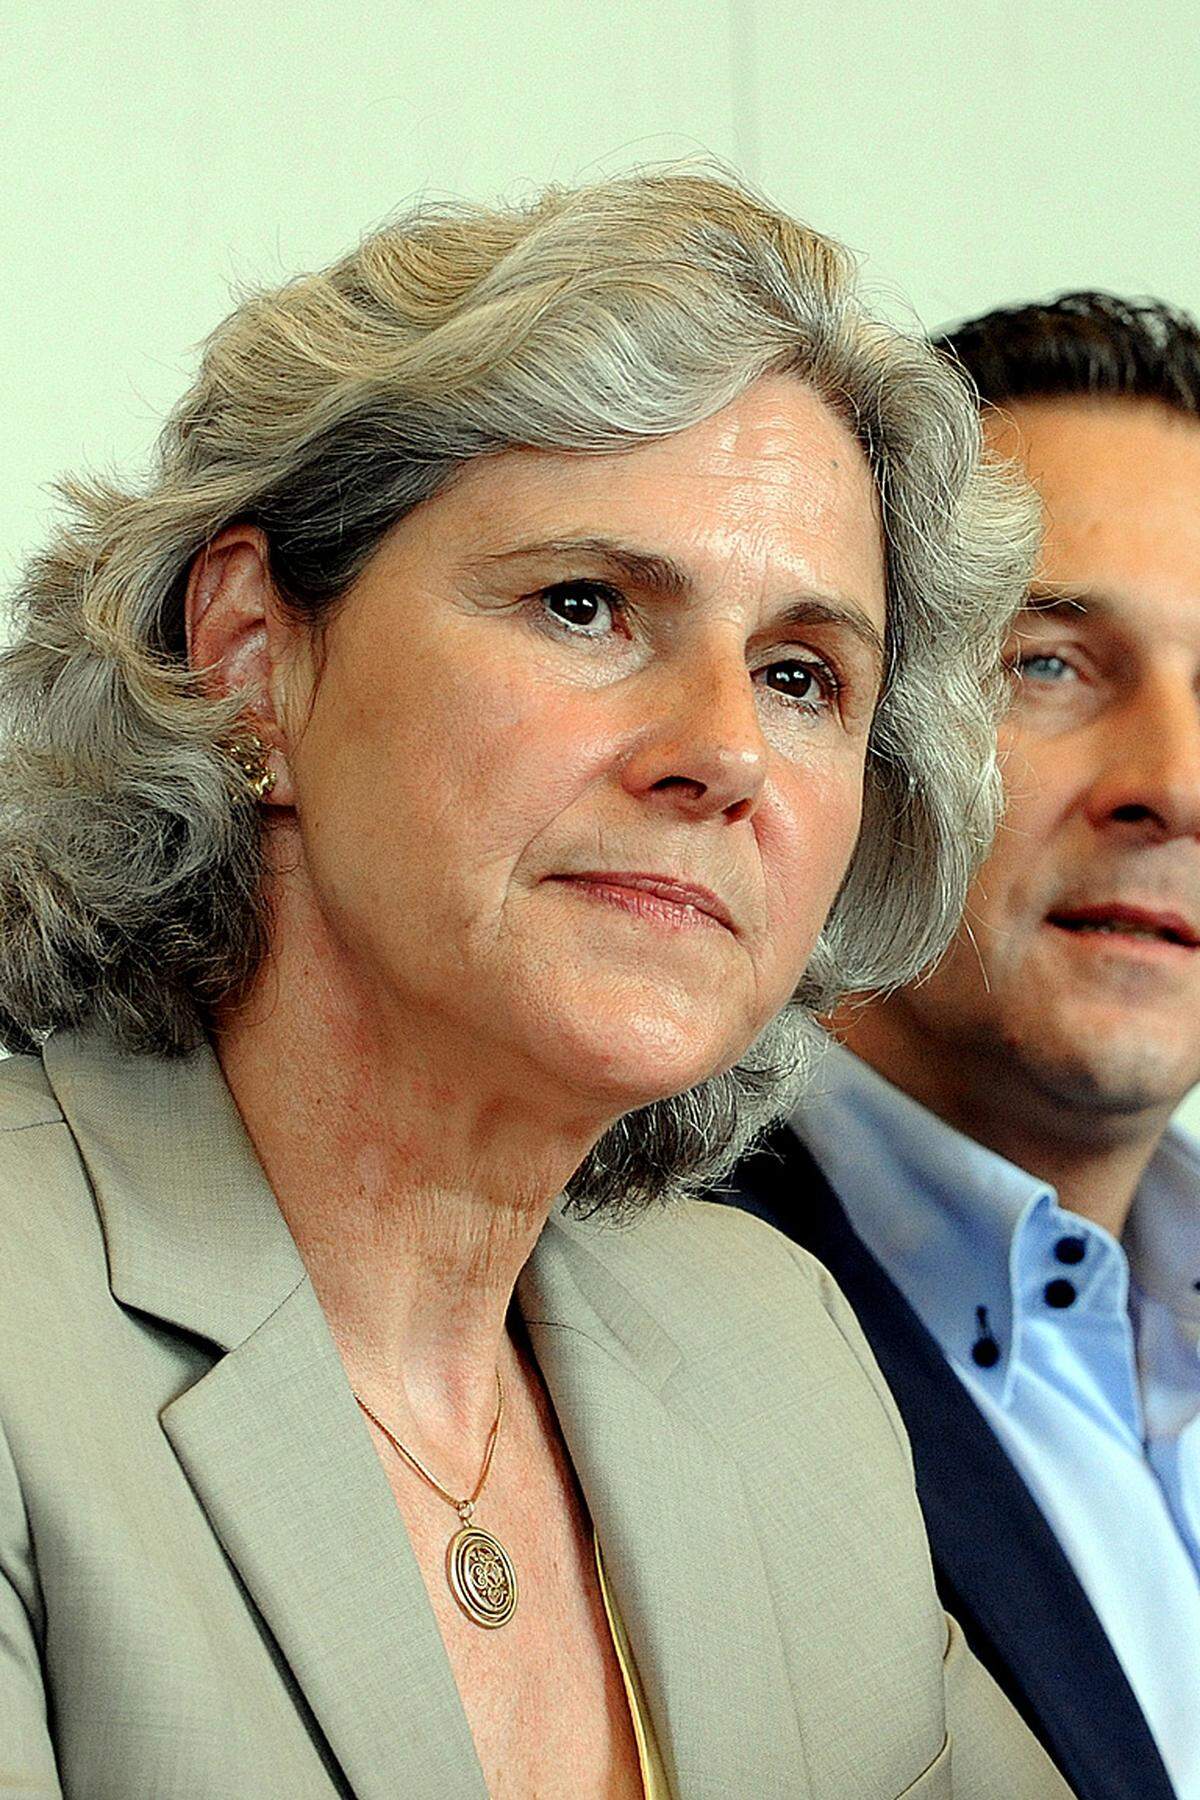 Barbara Rosenkranz Die neue niederösterreichische Abgeordnete ist eine alte Bekannte: Die 55-Jährige war schon im Parlament, ehe sie Parteichefin in Niederösterreich wurde. Nach dem schwachen Abschneiden bei der Landtagswahl hat sie jetzt die Chance auf einen Neustart.